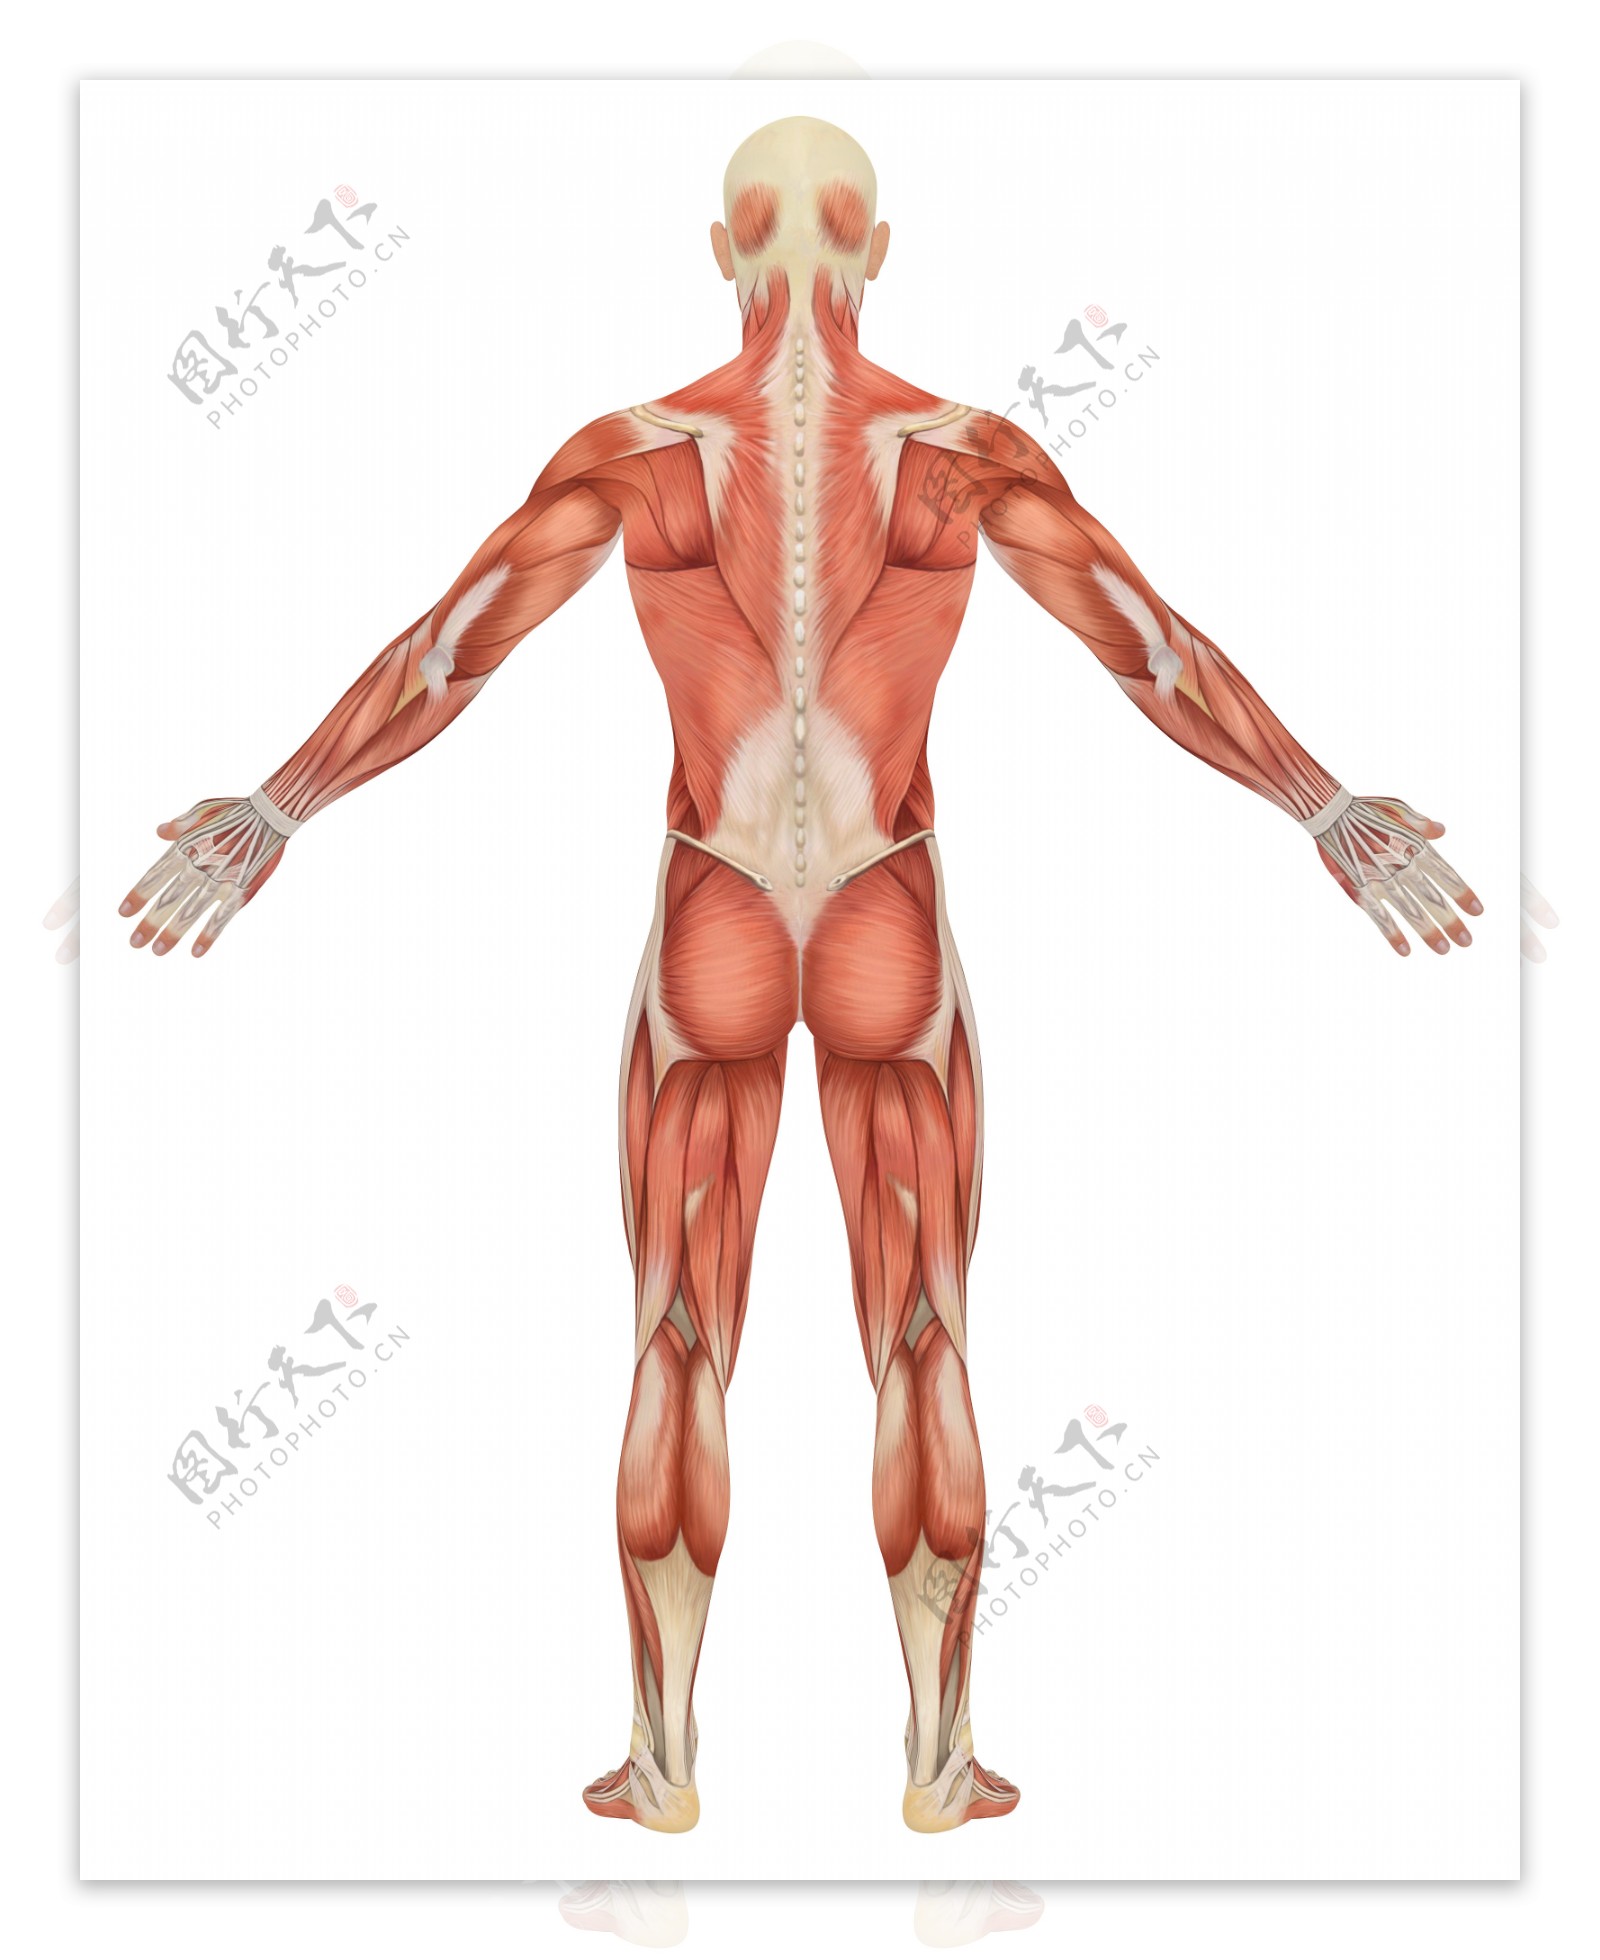 男性背部肌肉组织图片